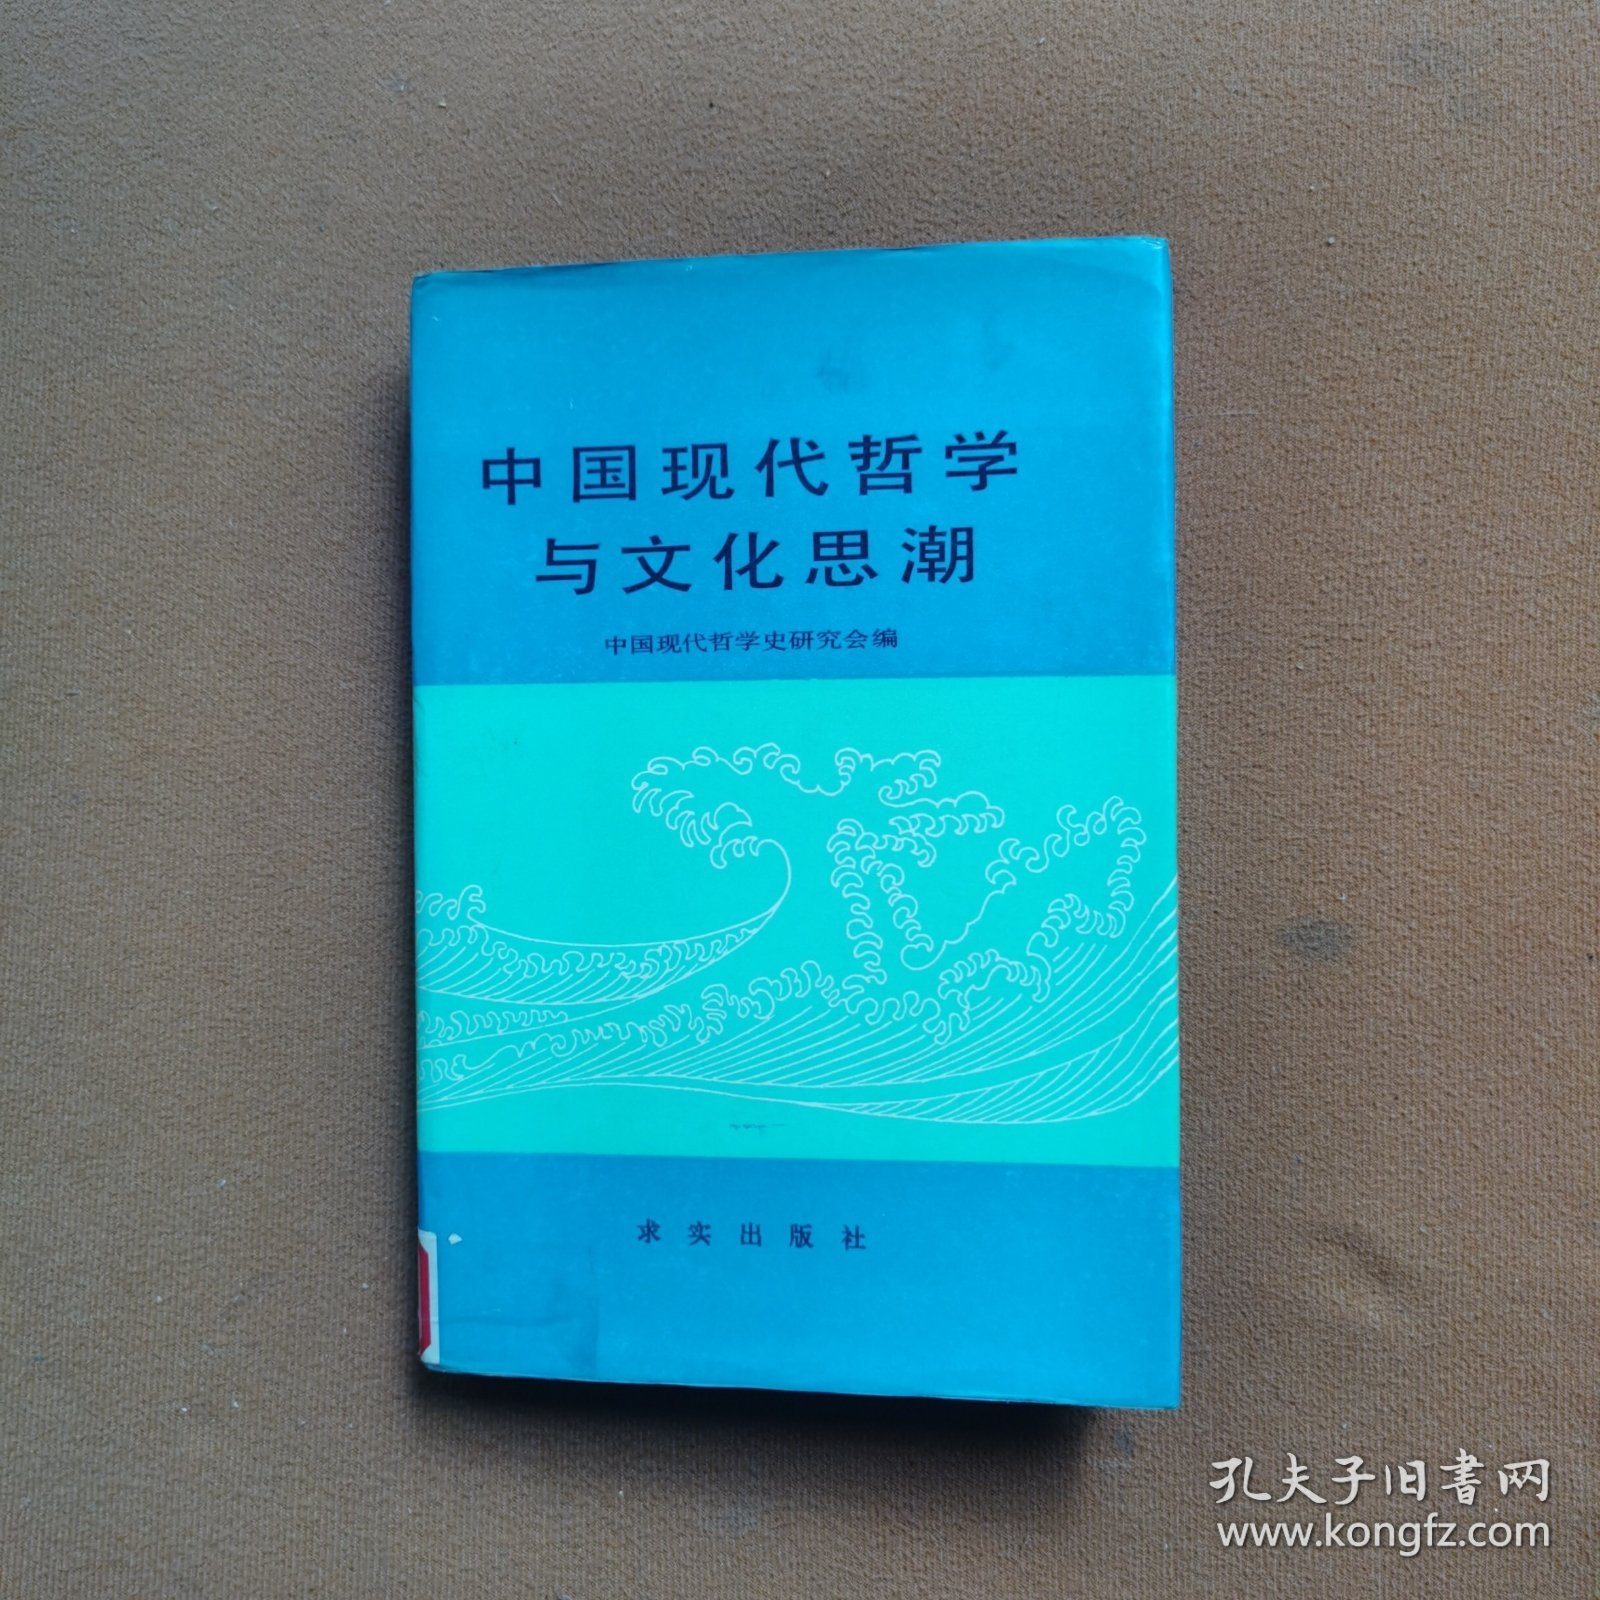 中国现代哲学与文化思潮